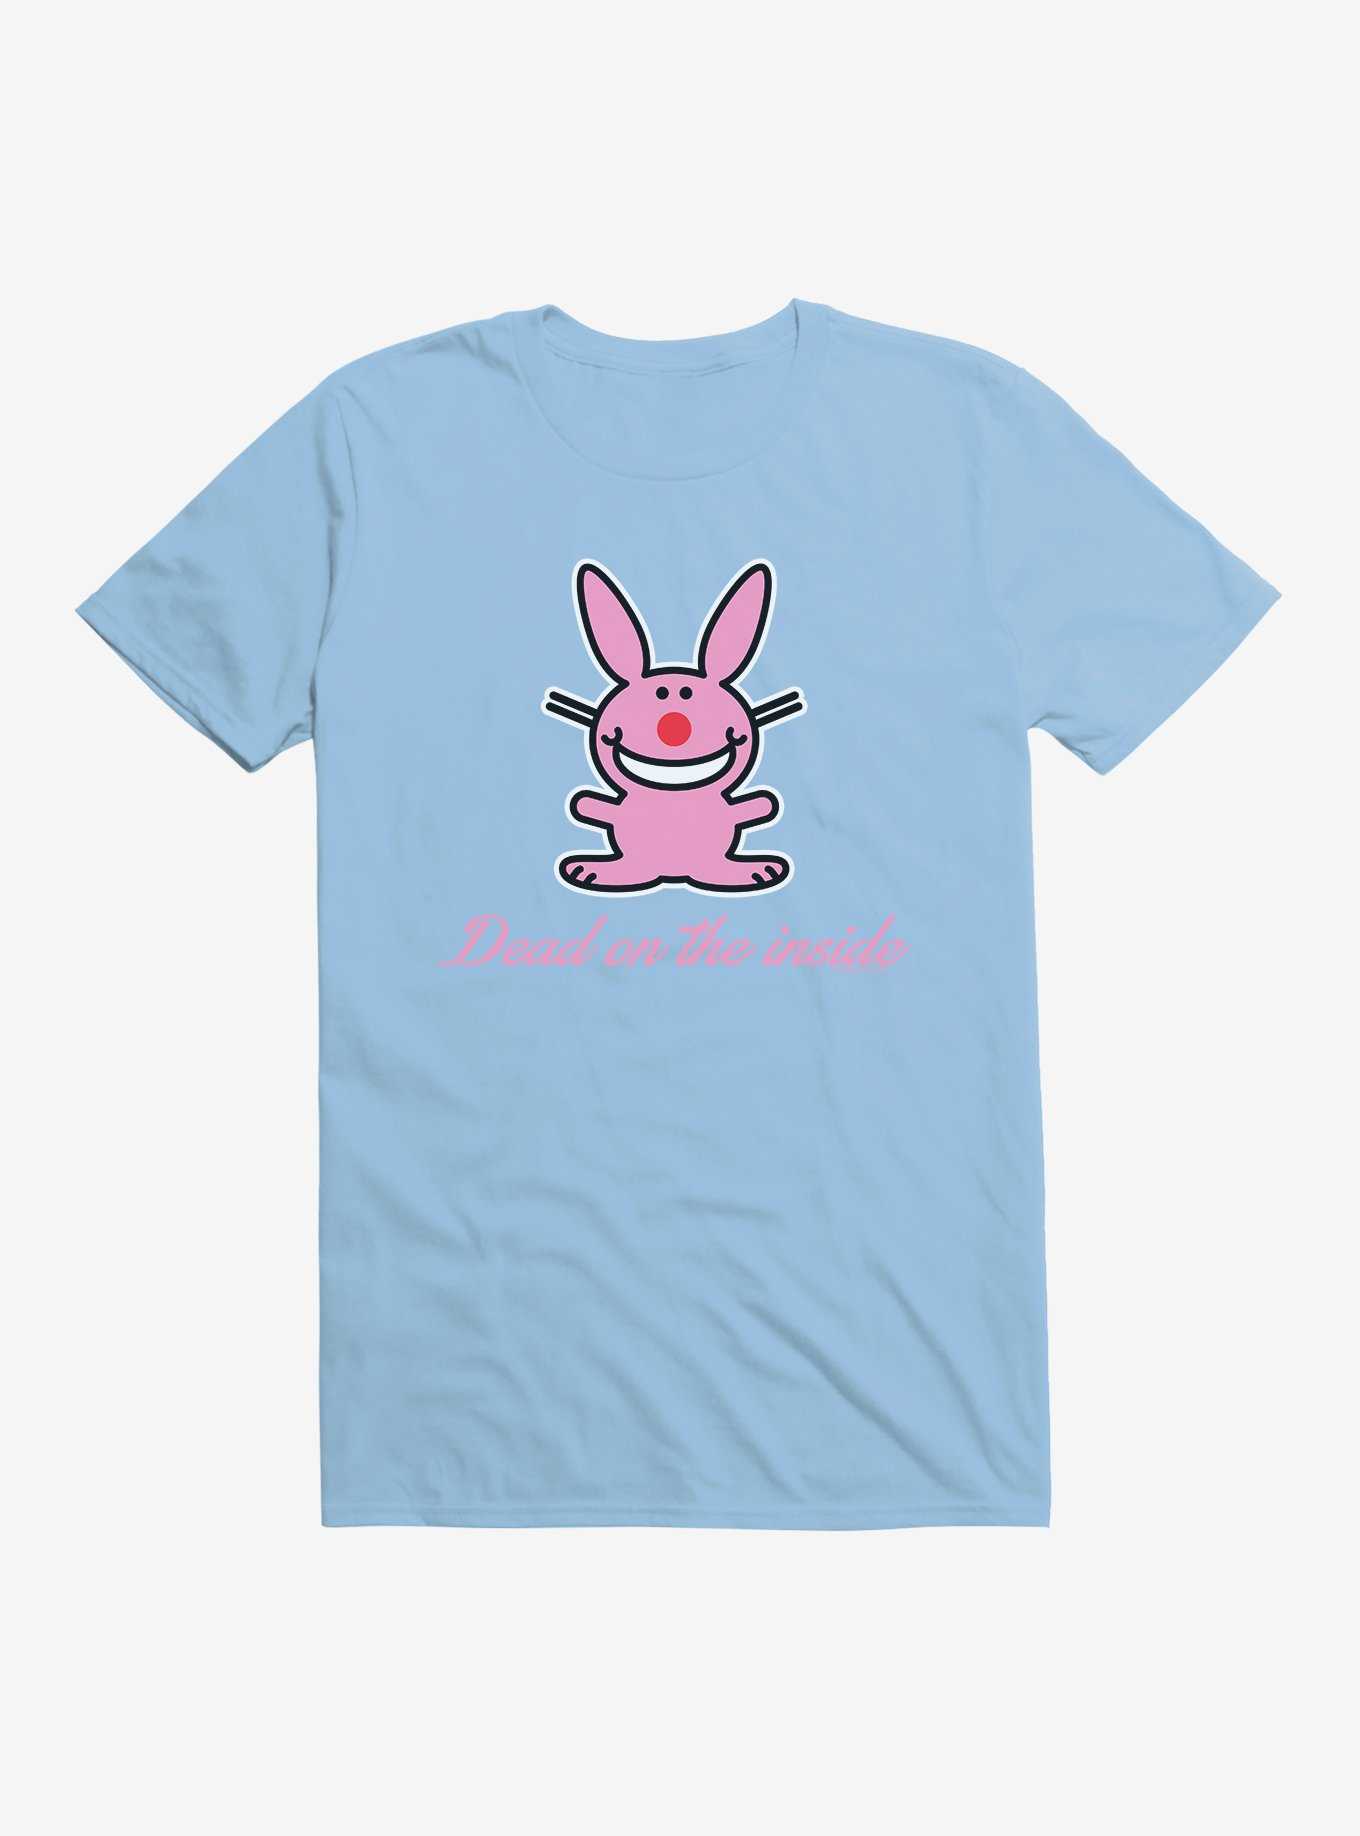 It's Happy Bunny Dead Inside T-Shirt, , hi-res